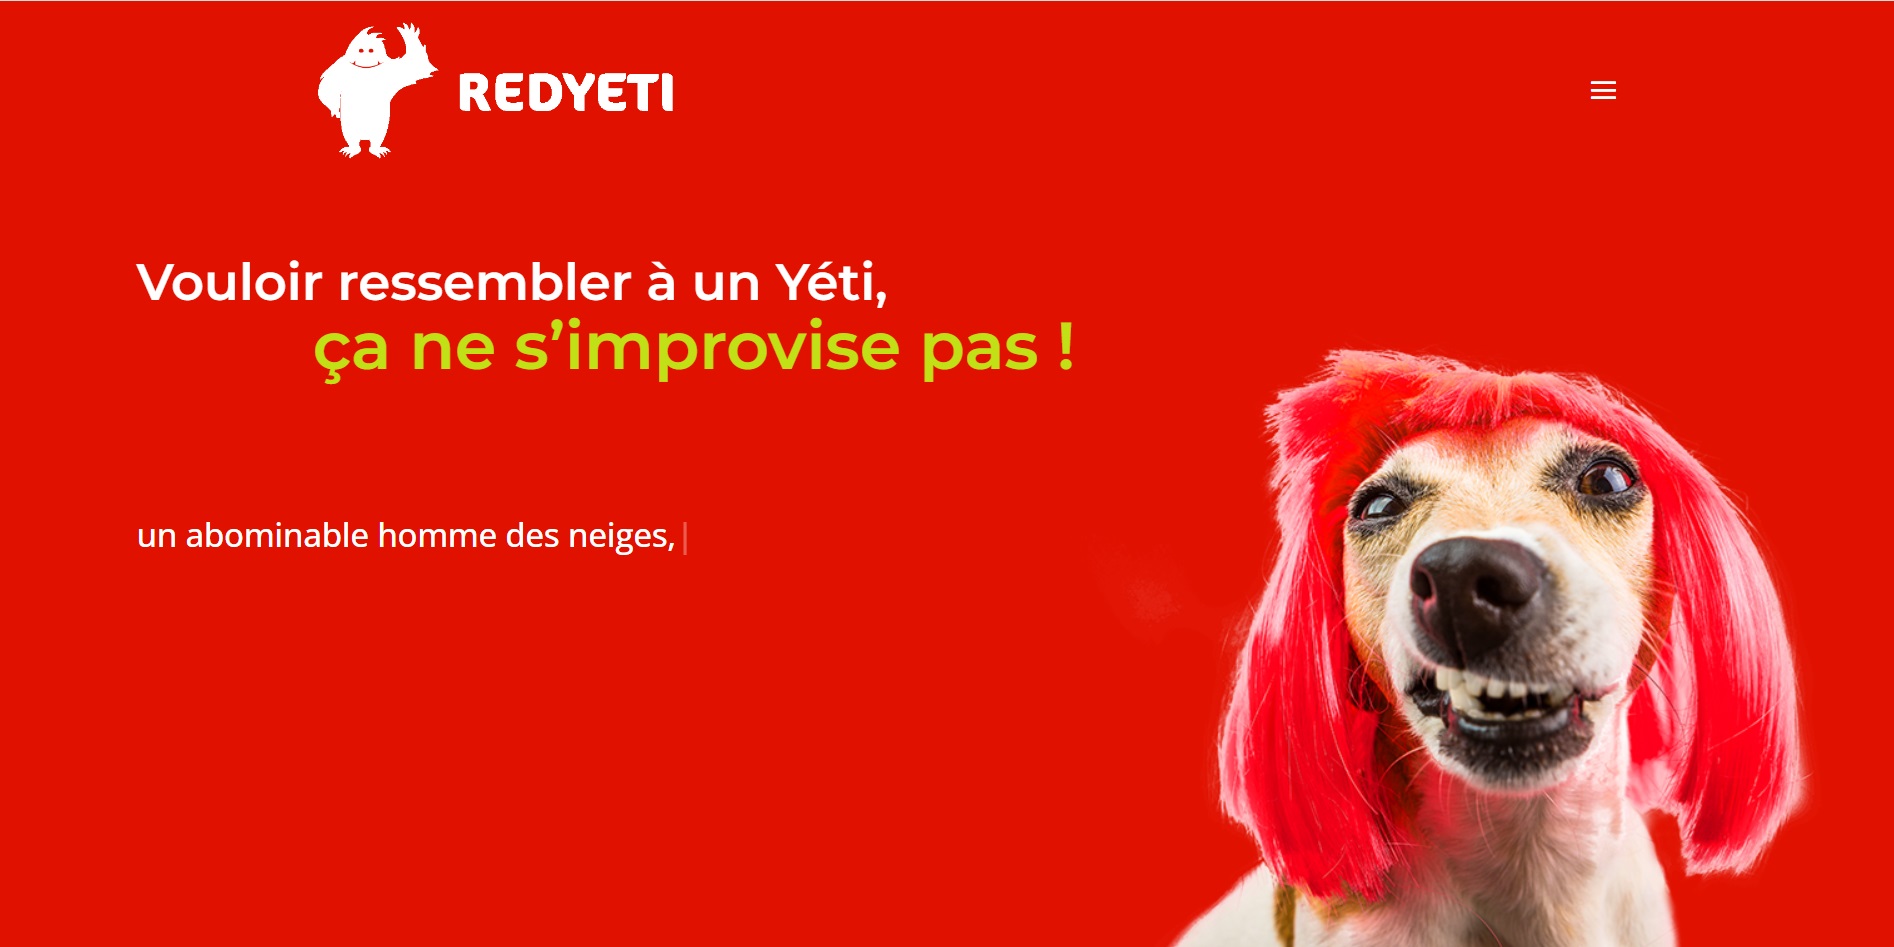  REDYETI —Création graphique et site internet Agence web et communication - Agence Web à Chambéry